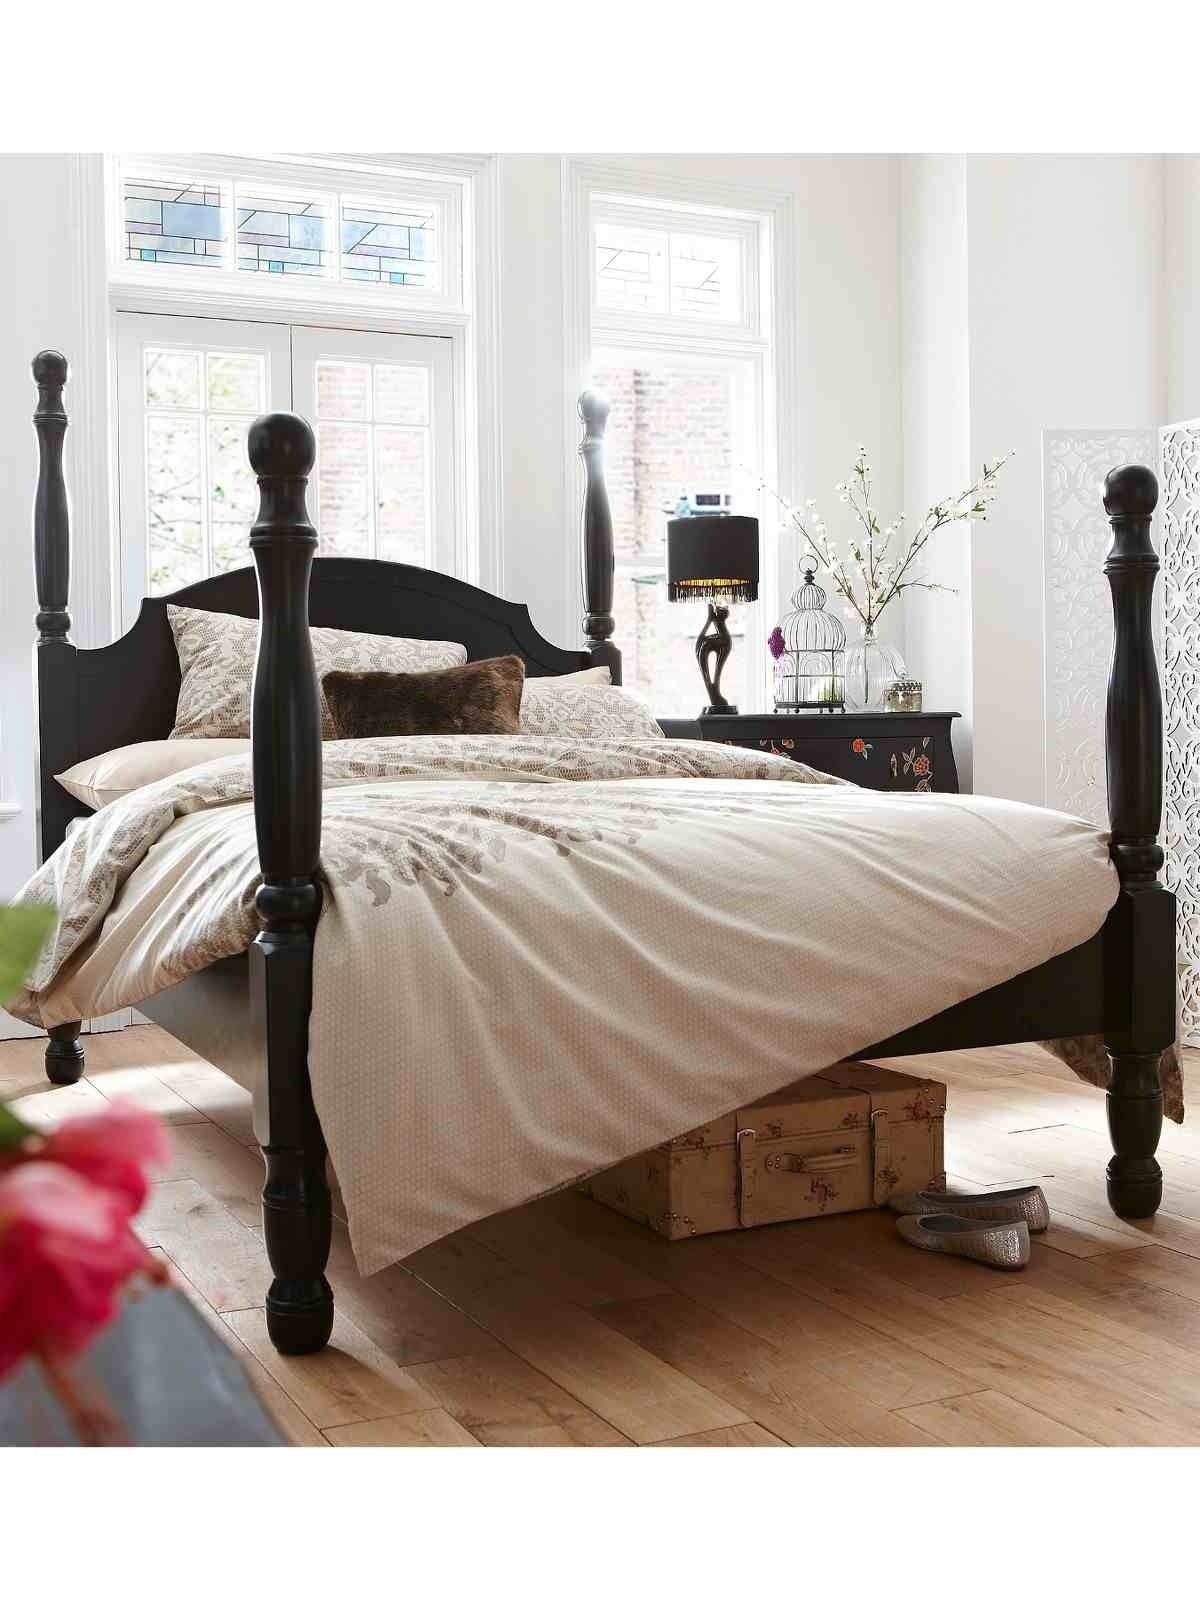 Four poster black bed comfy elegant